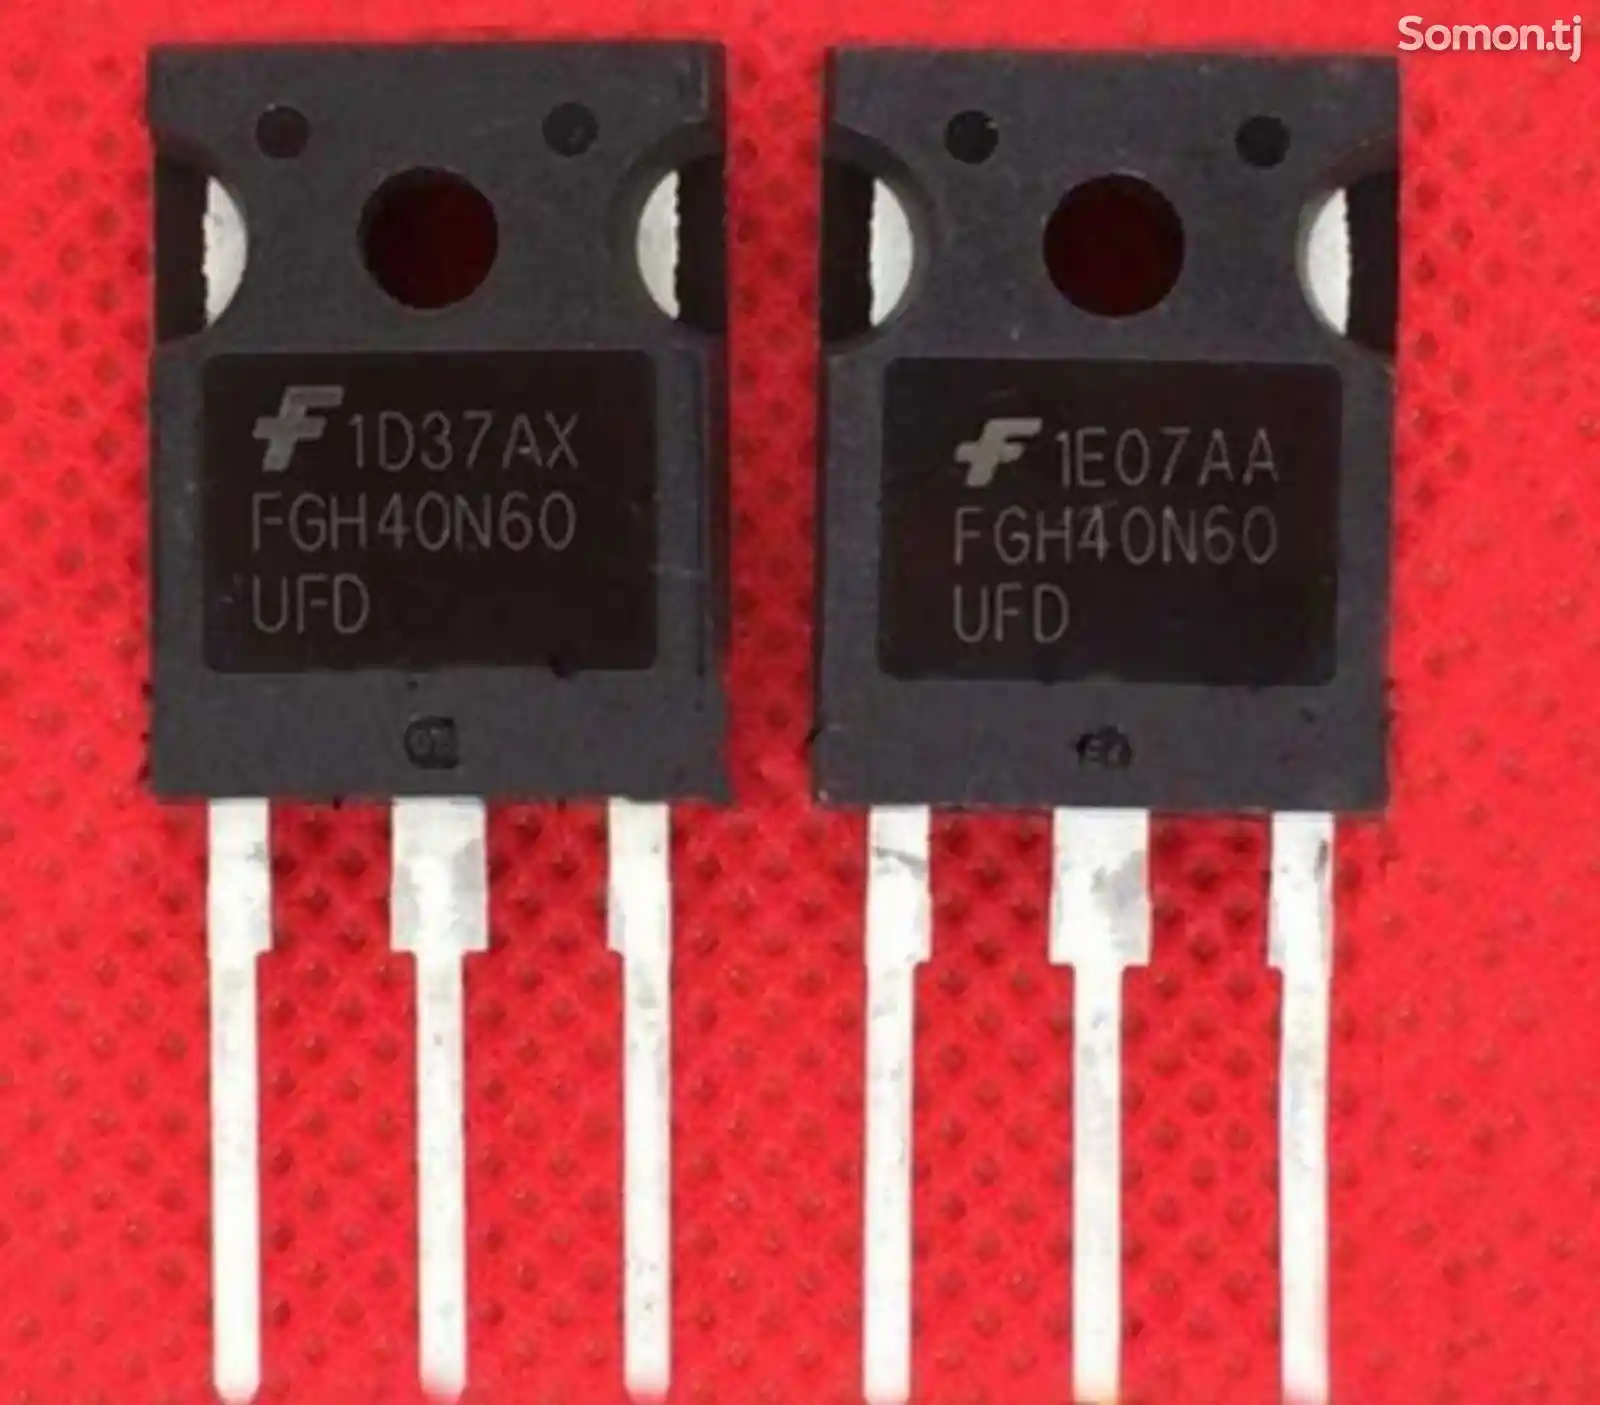 Транзисторы биполярные с изолированным затвором IGBxTs 25n120,40n60.60n.60.9n60-2